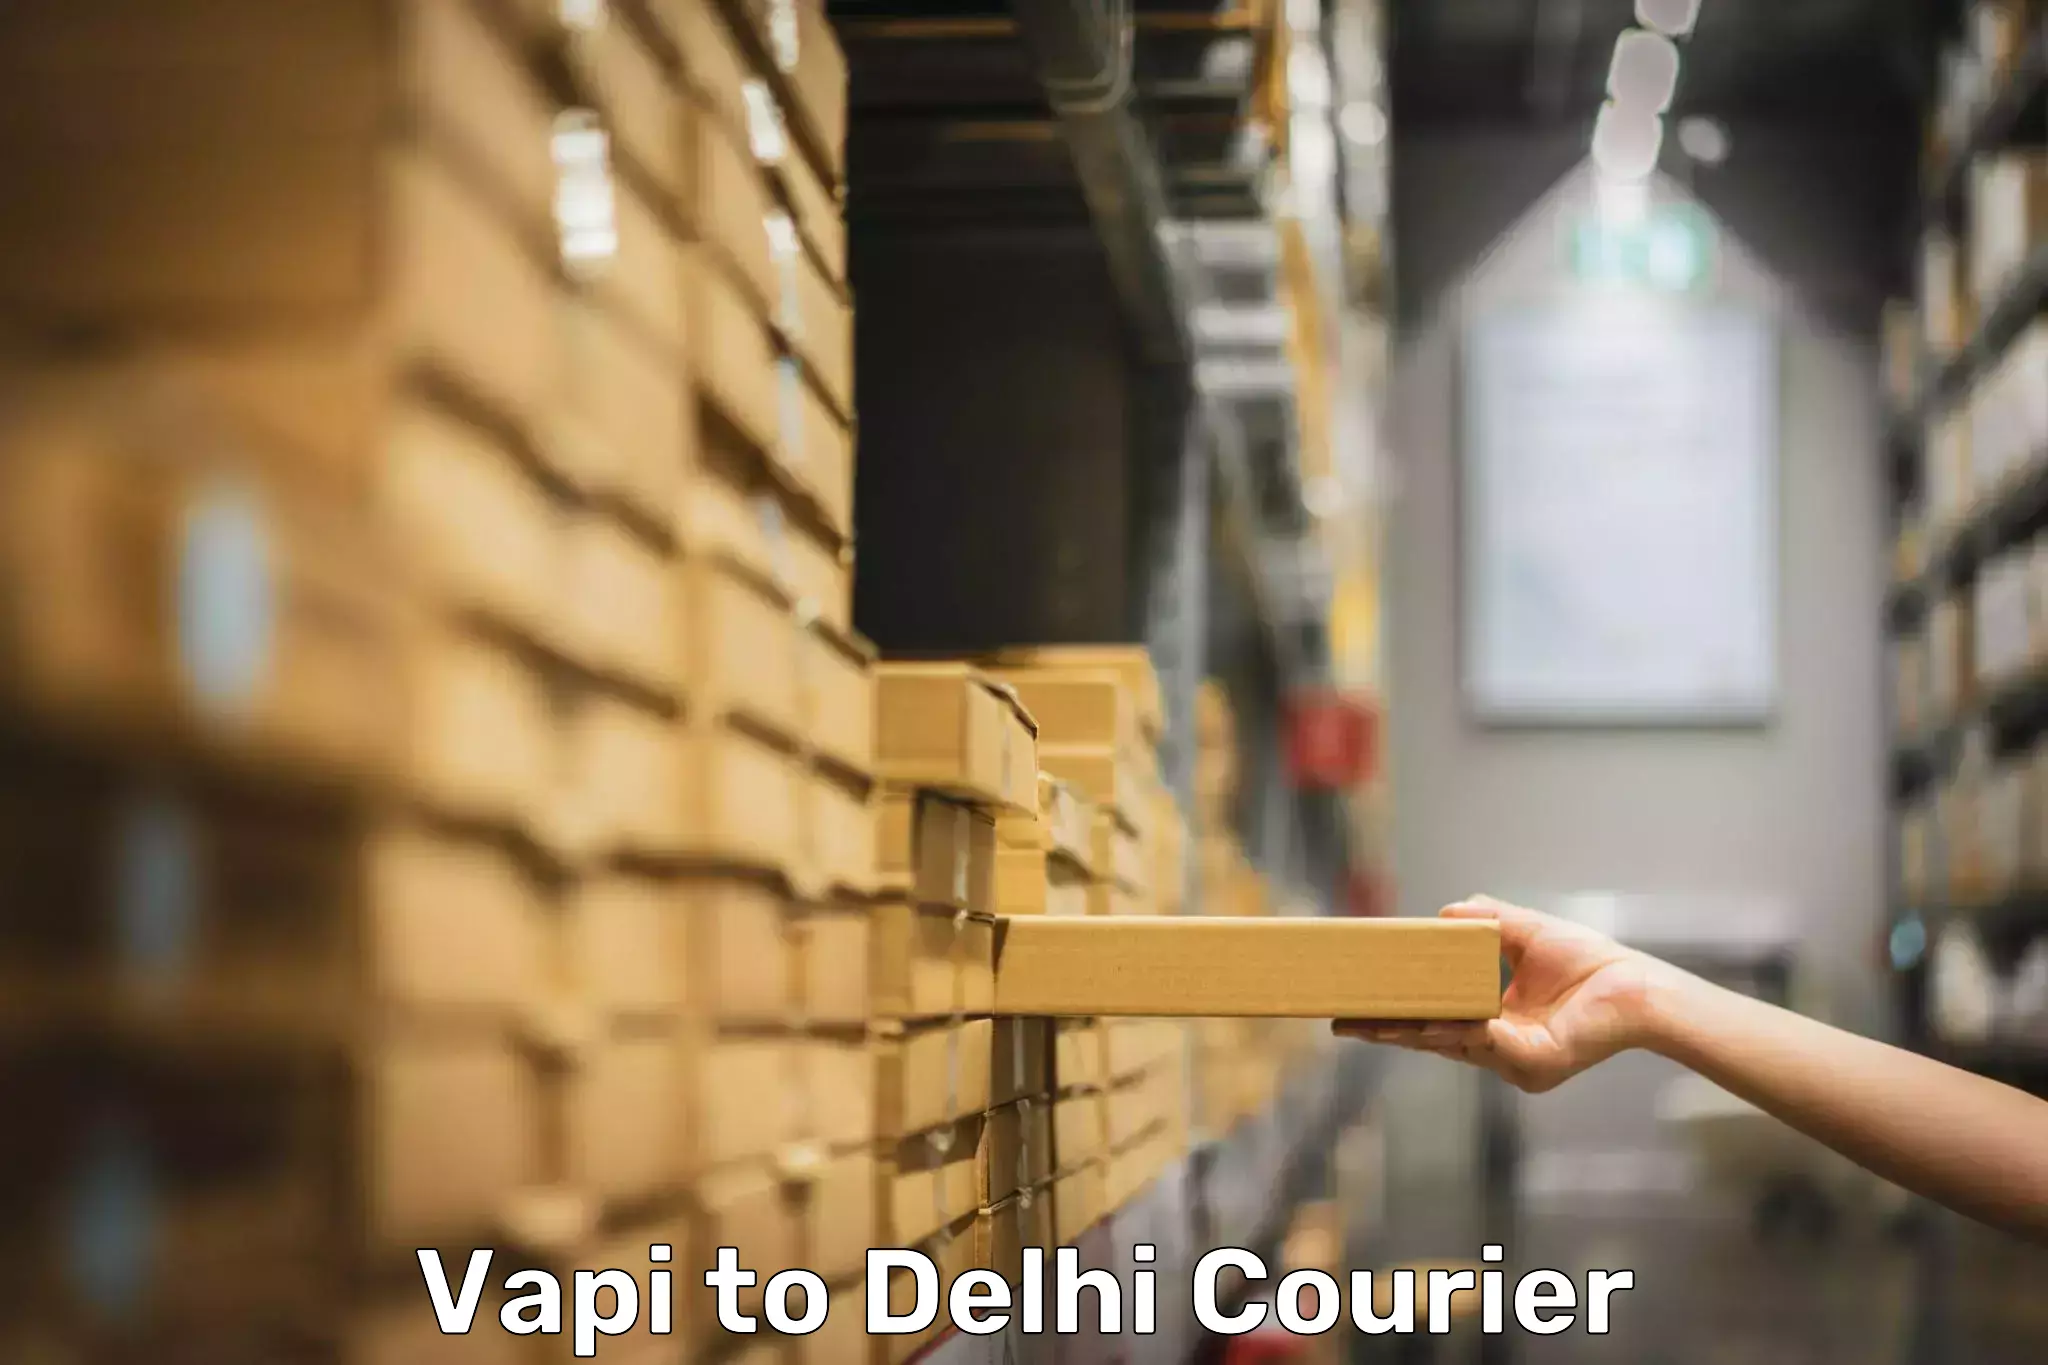 Digital baggage courier Vapi to Delhi